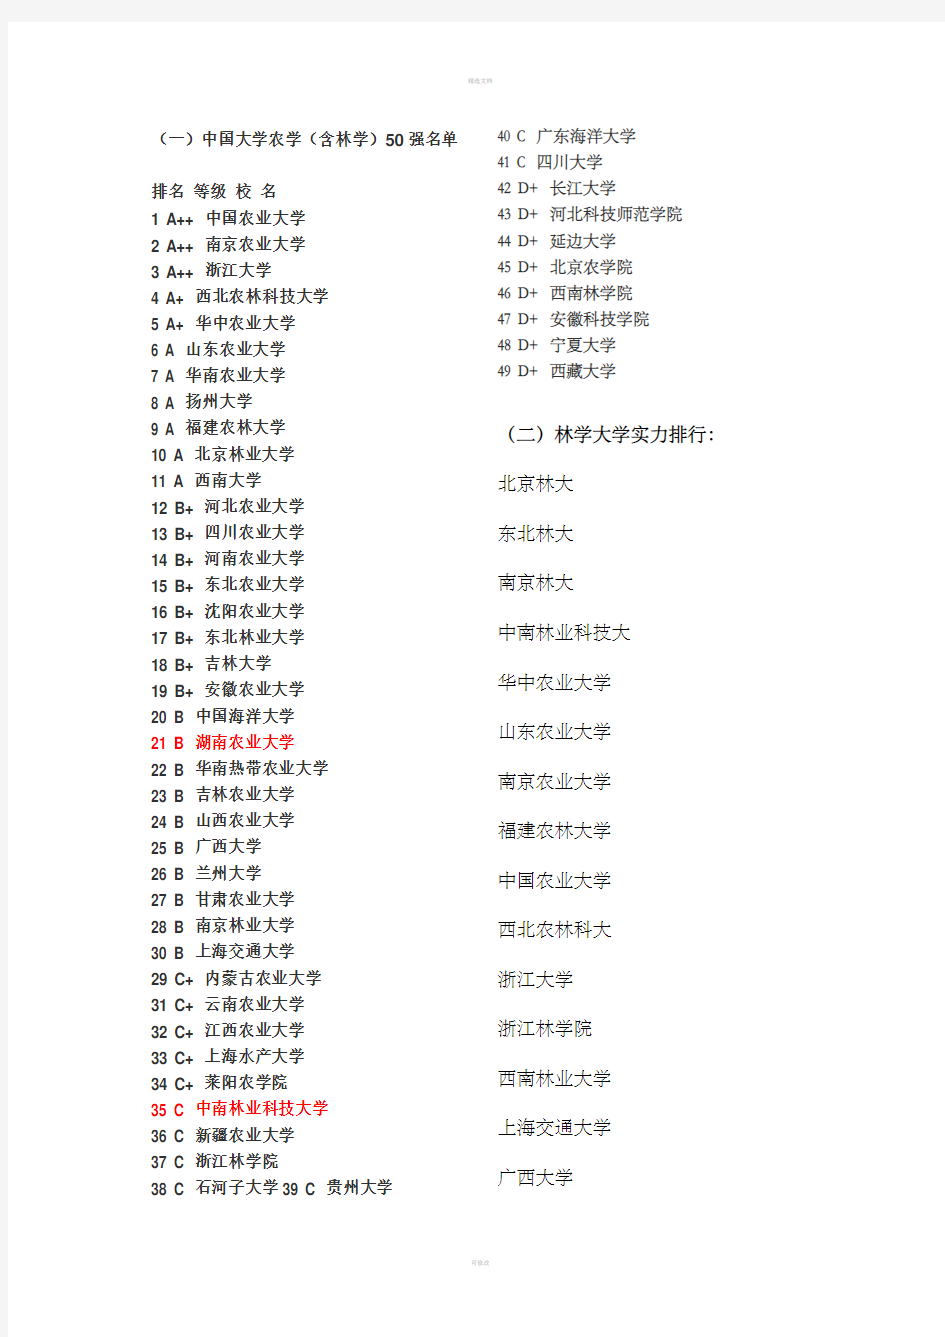 中国大学农学(包含林学)50强名单